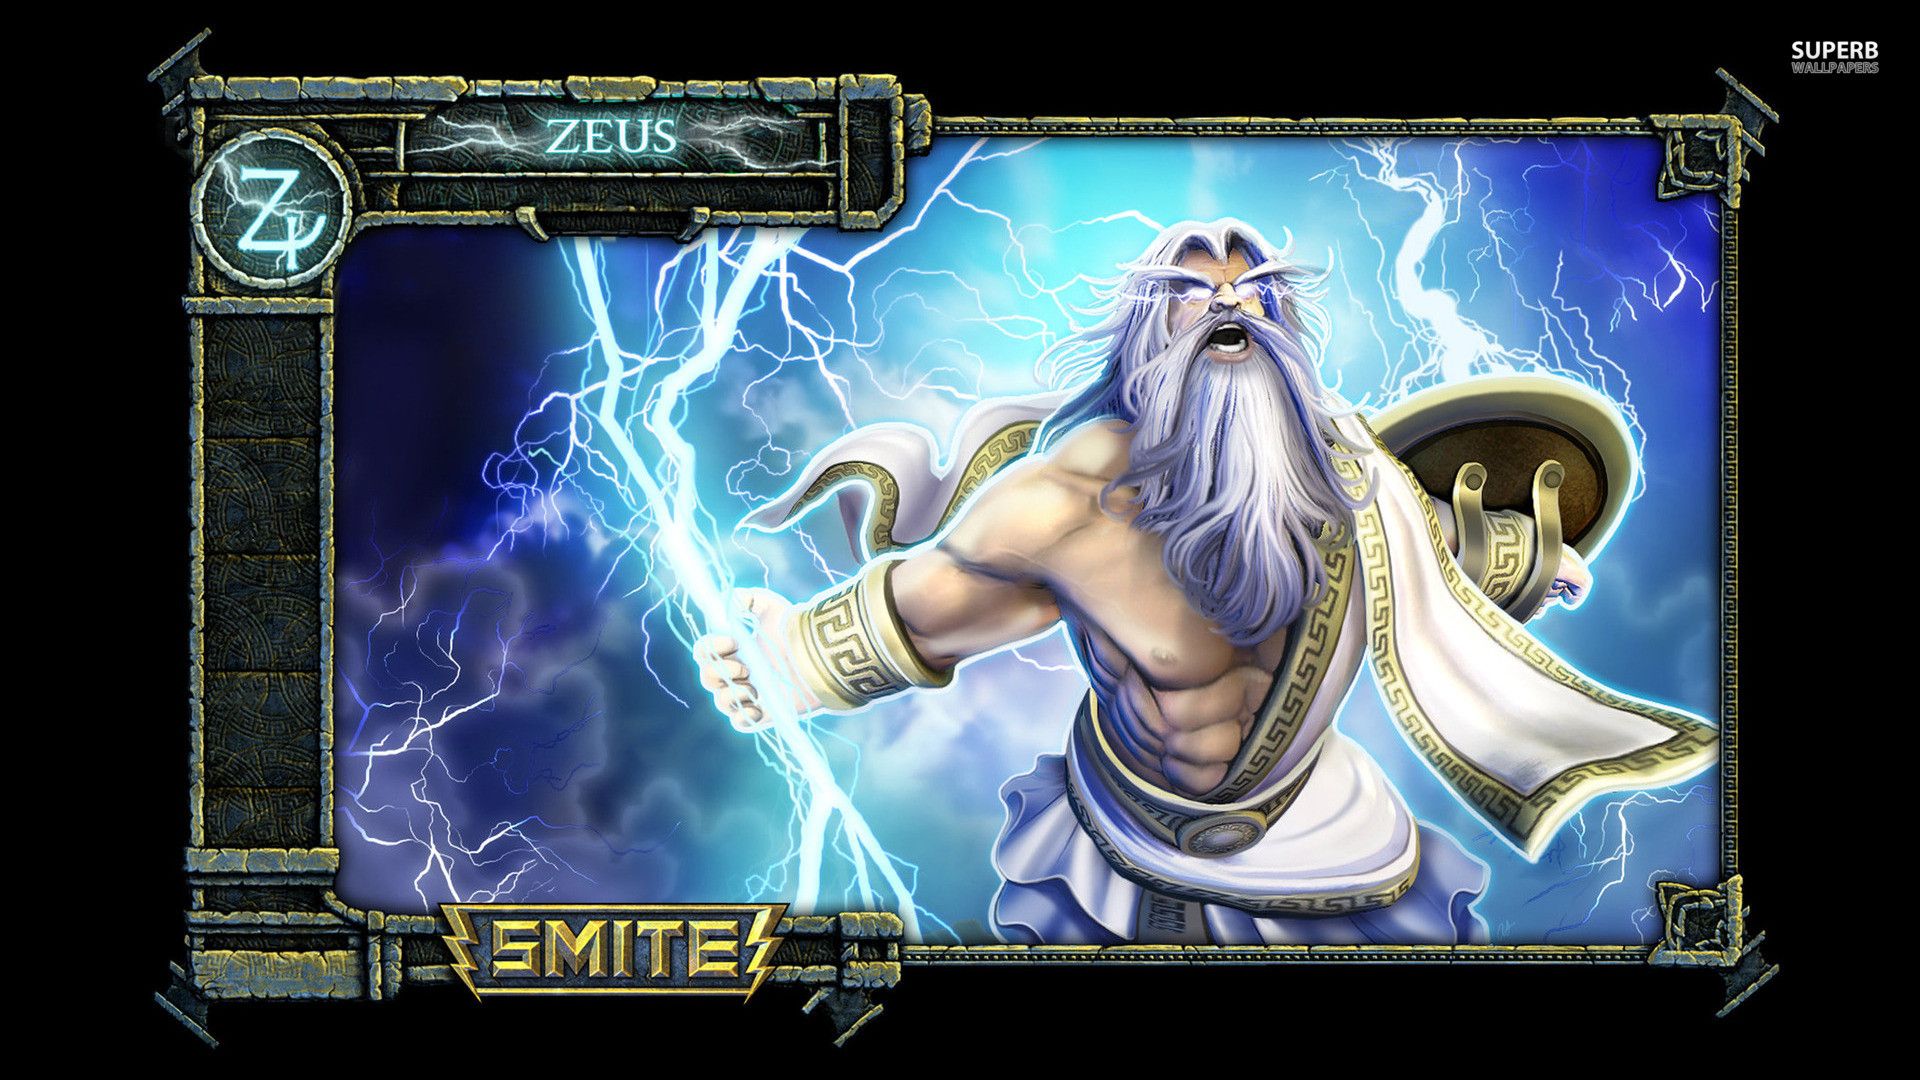 Zeus Smite Wallpaper Game